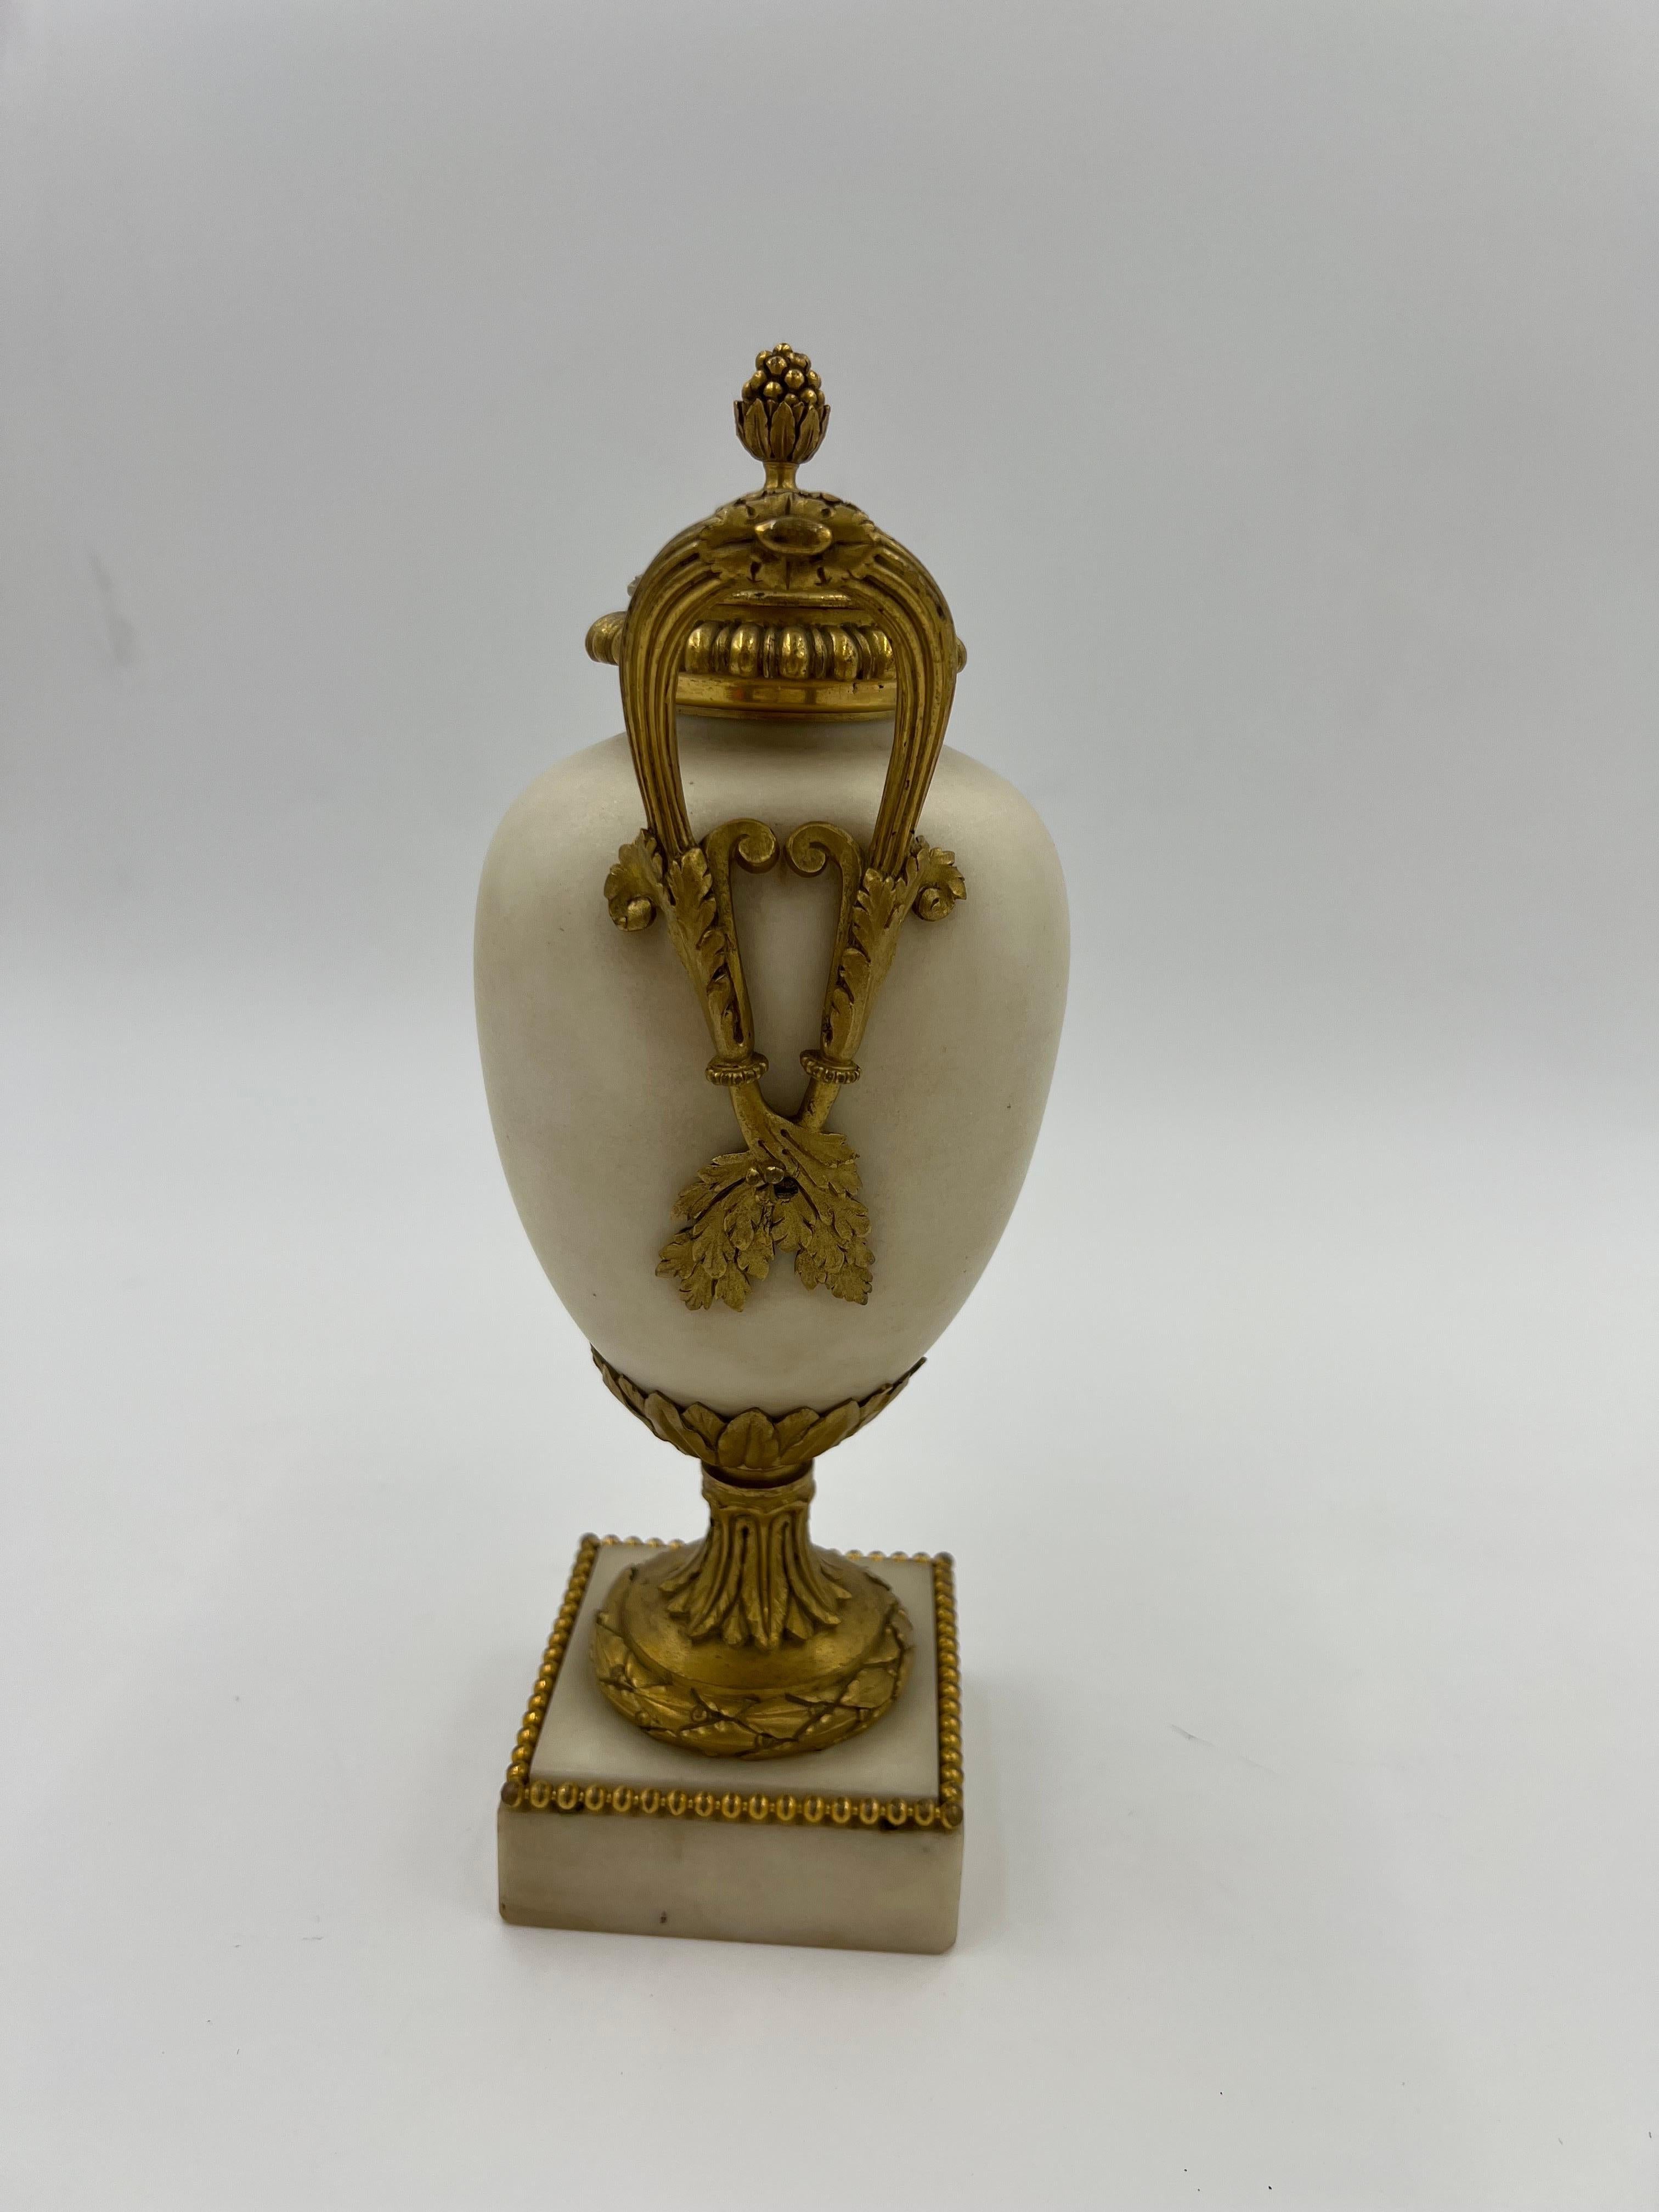 Ein phänomenales Paar französischer Vasen aus weißem Marmor des 19. Jahrhunderts mit qualitätsvollen Ormolu-Beschlägen aus vergoldeter Bronze, darunter ein mit Perlen besetzter Rand am Sockel, Akanthusblatt-Träger, kunstvoll gearbeitete Griffe in